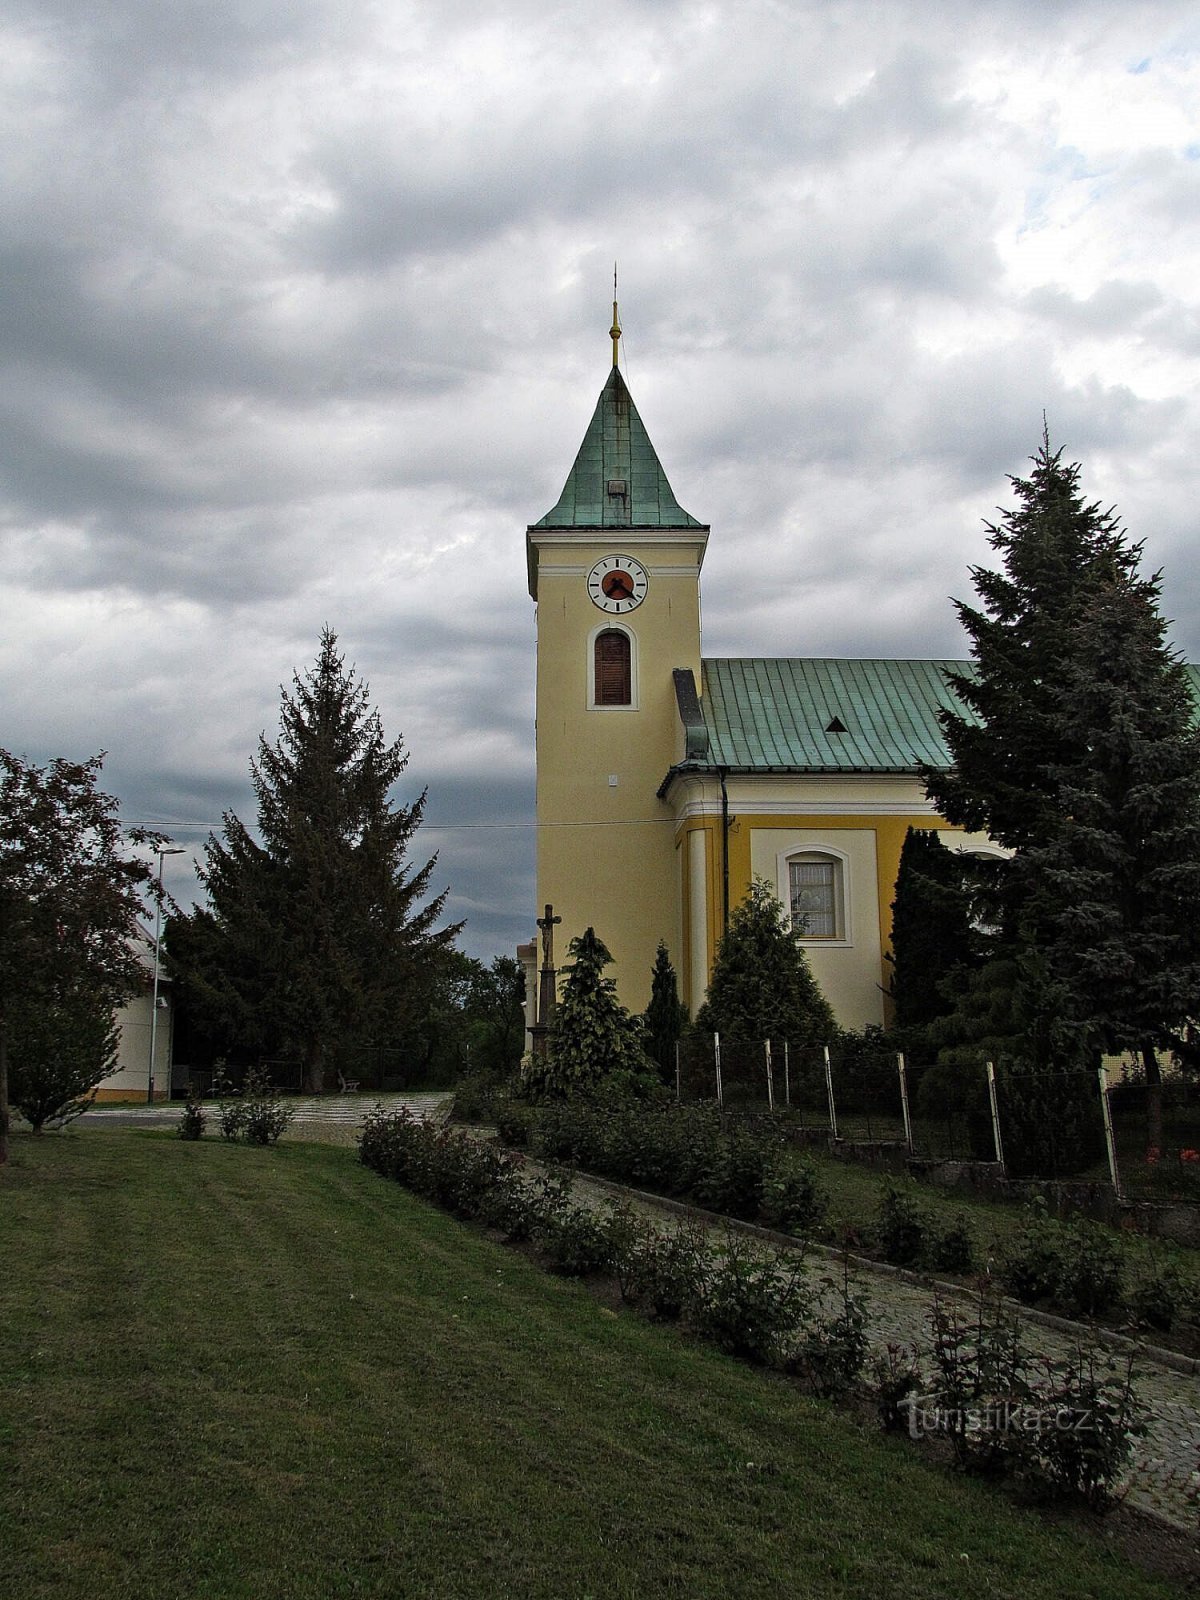 Kostelec bei Holešov - die Kirche St. Peter und Paul